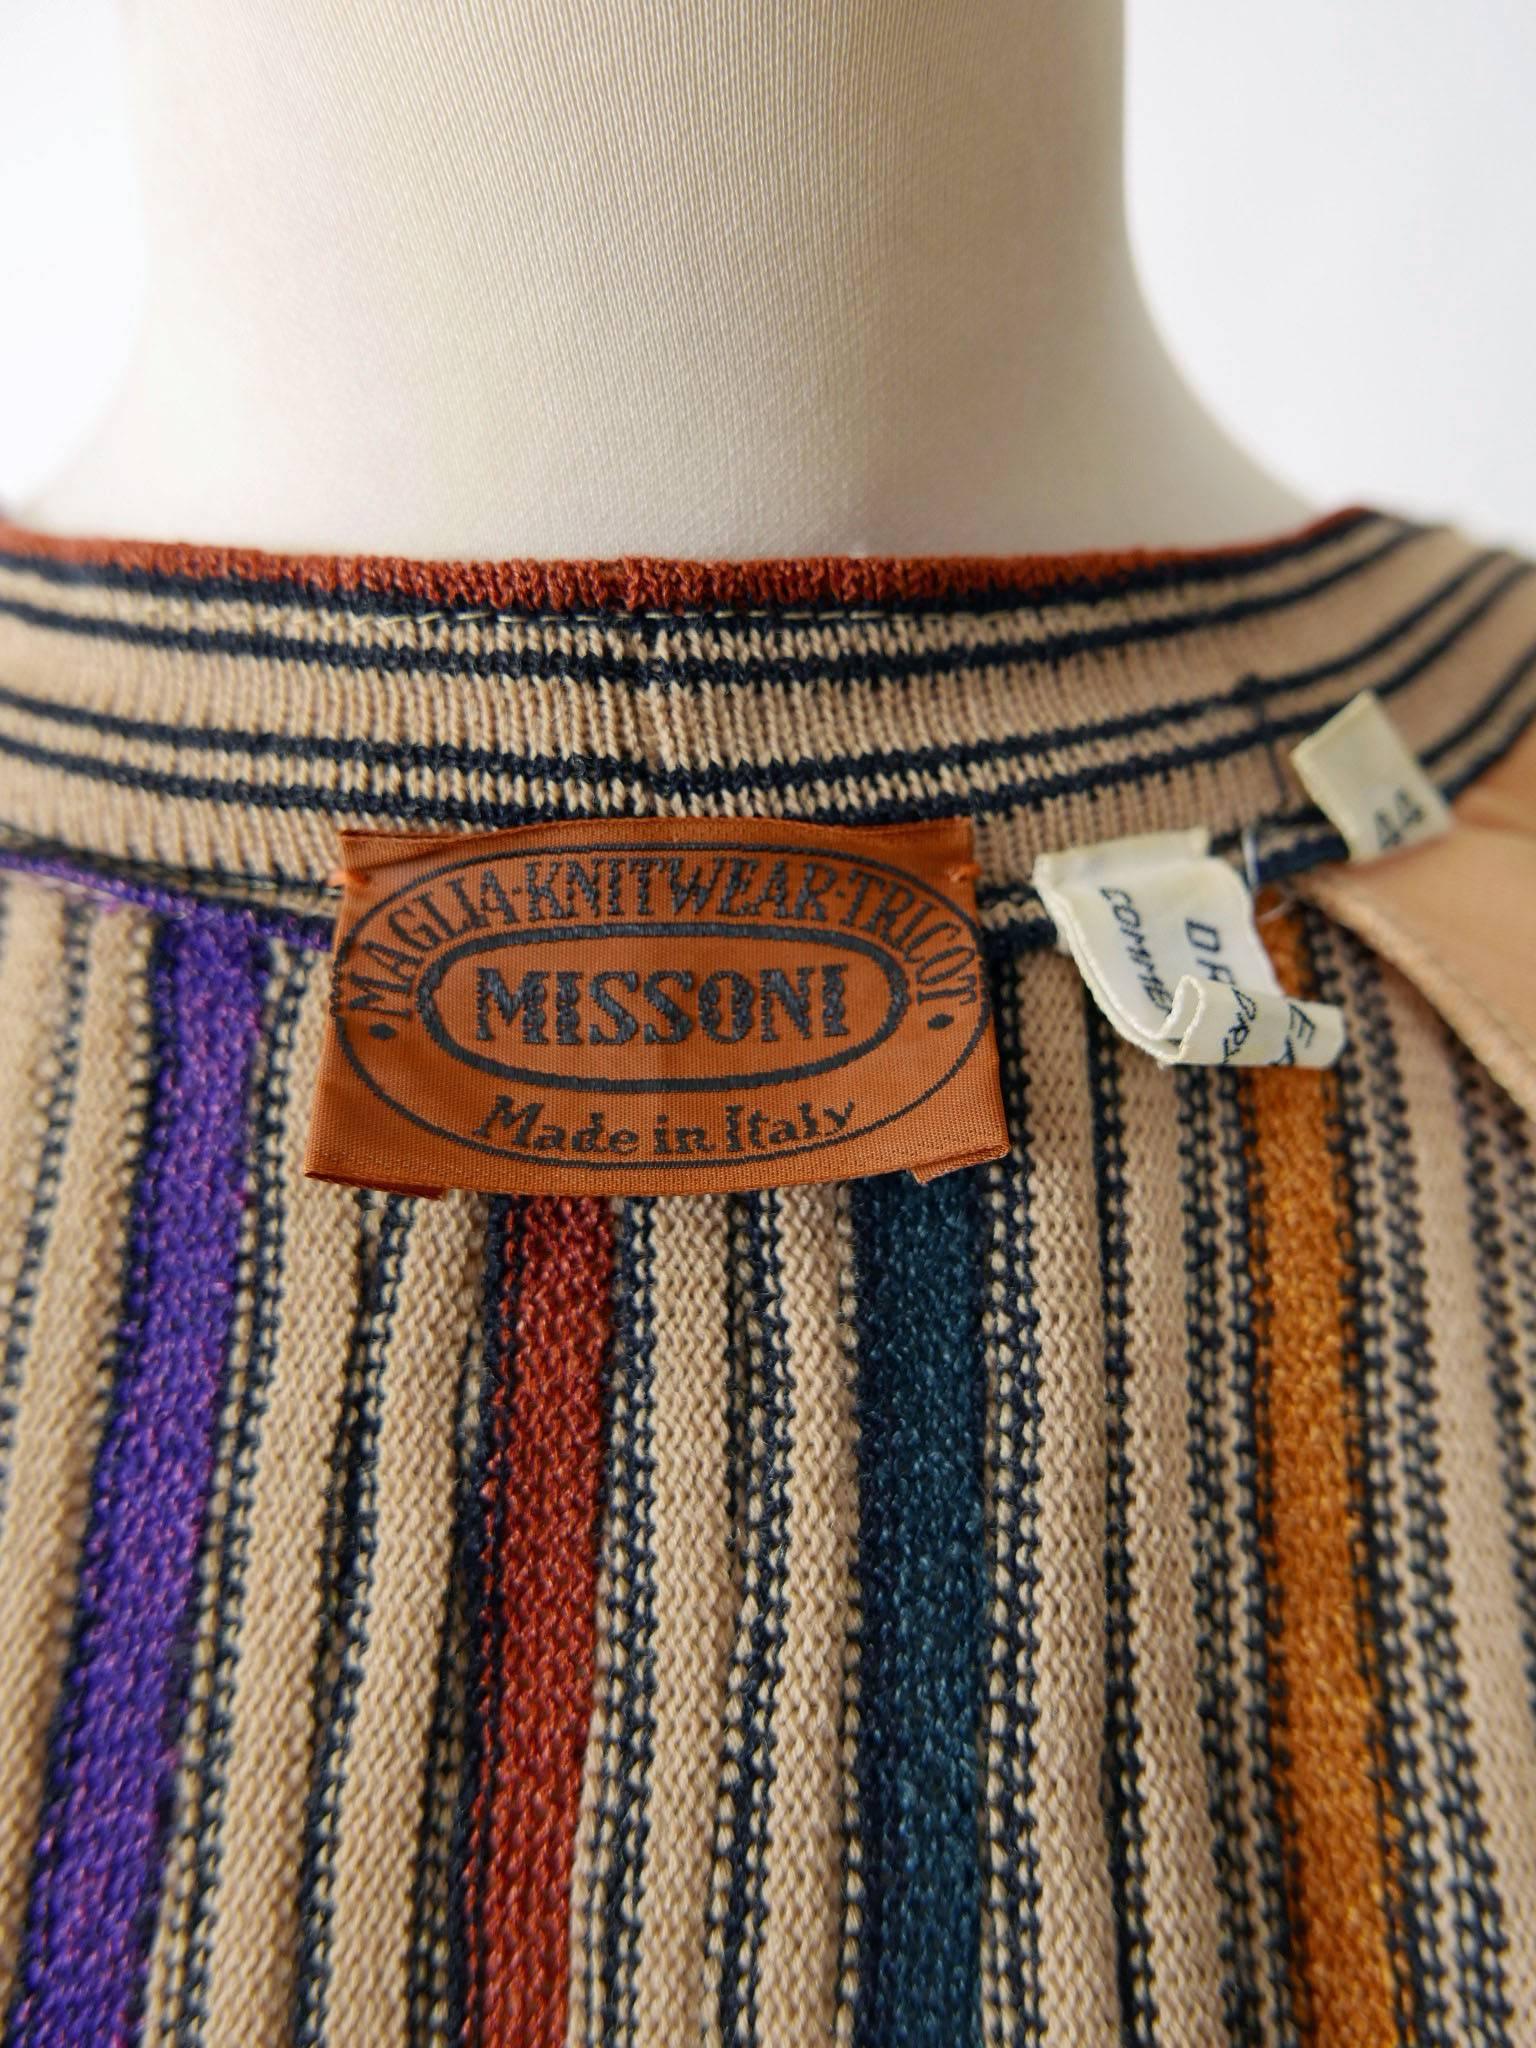 1970s MISSONI Knit Sweater Striped Cardigan 1